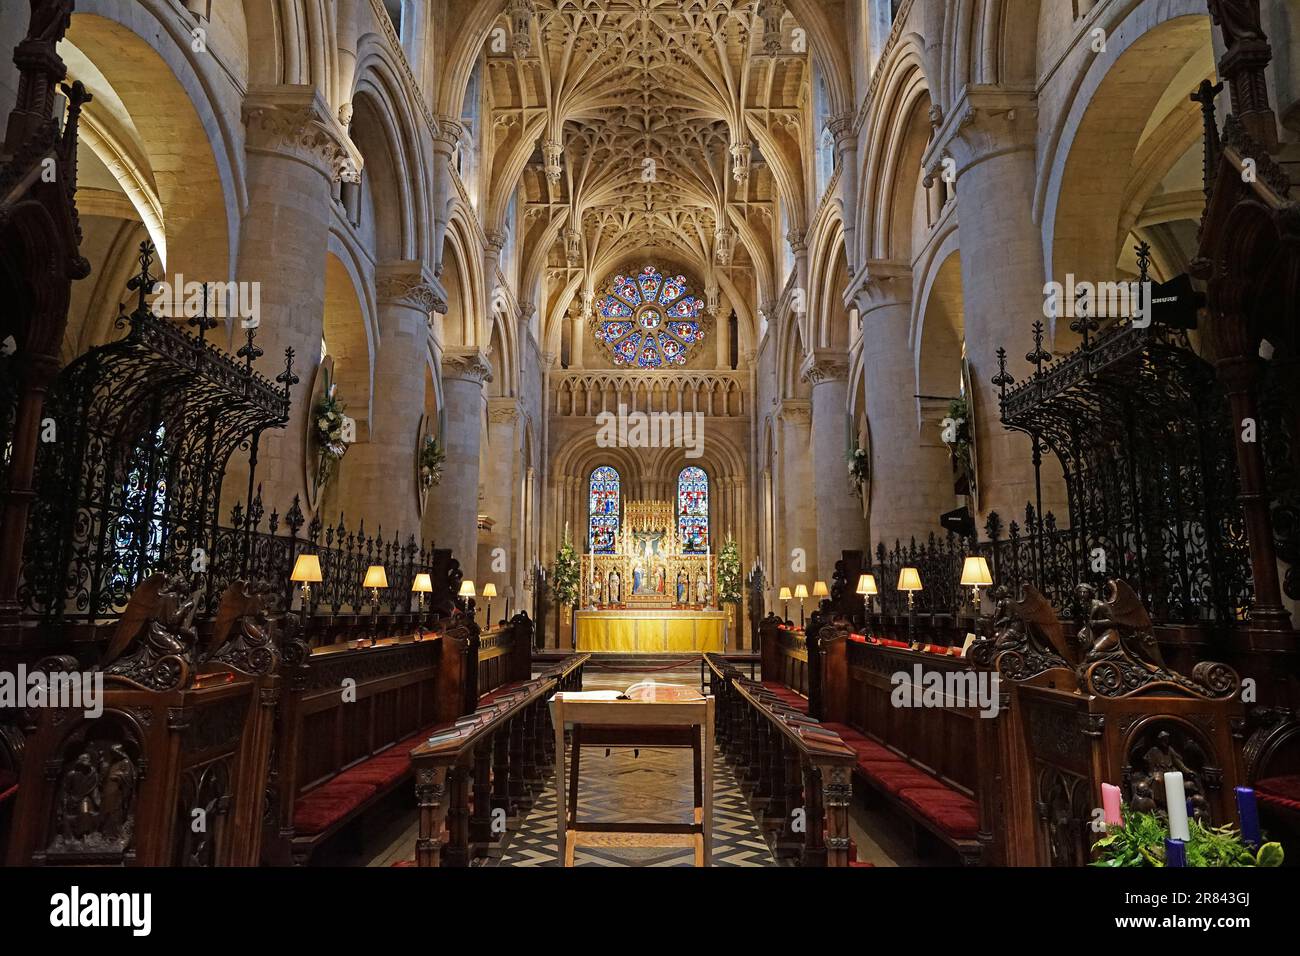 Europäische Innenarchitektur und Deckendekoration der Christ Church Colleges der Universität Oxford und der Kathedrale - Vereinigtes Königreich Stockfoto